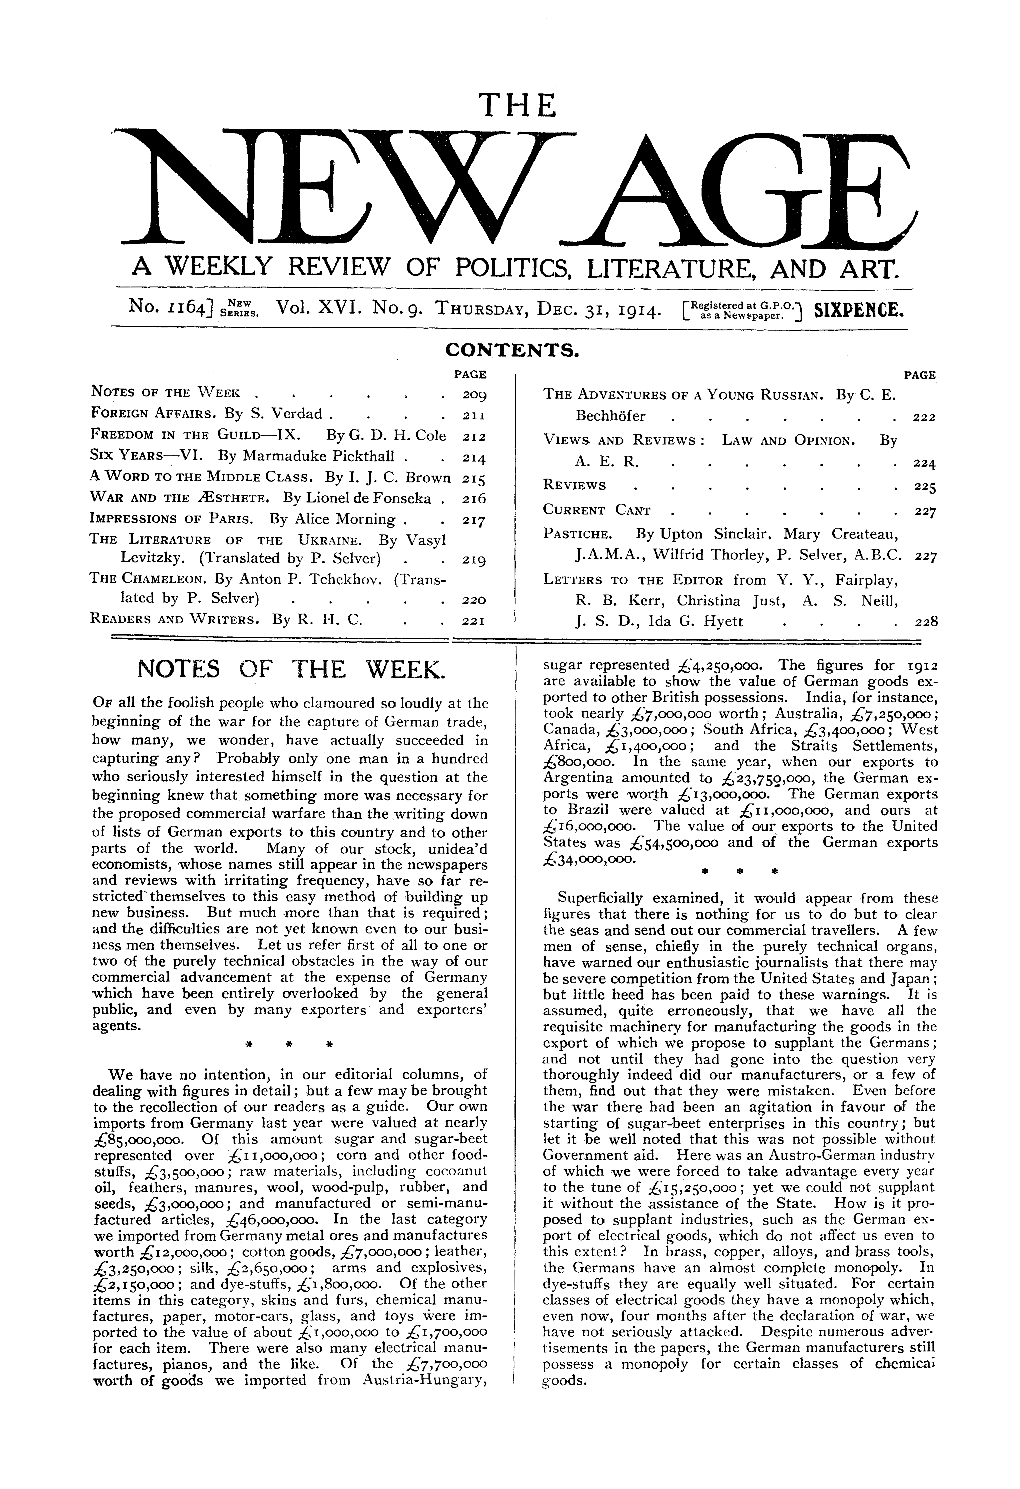 New Age, Vol. 16, No. 9, Dec. 31, 1914